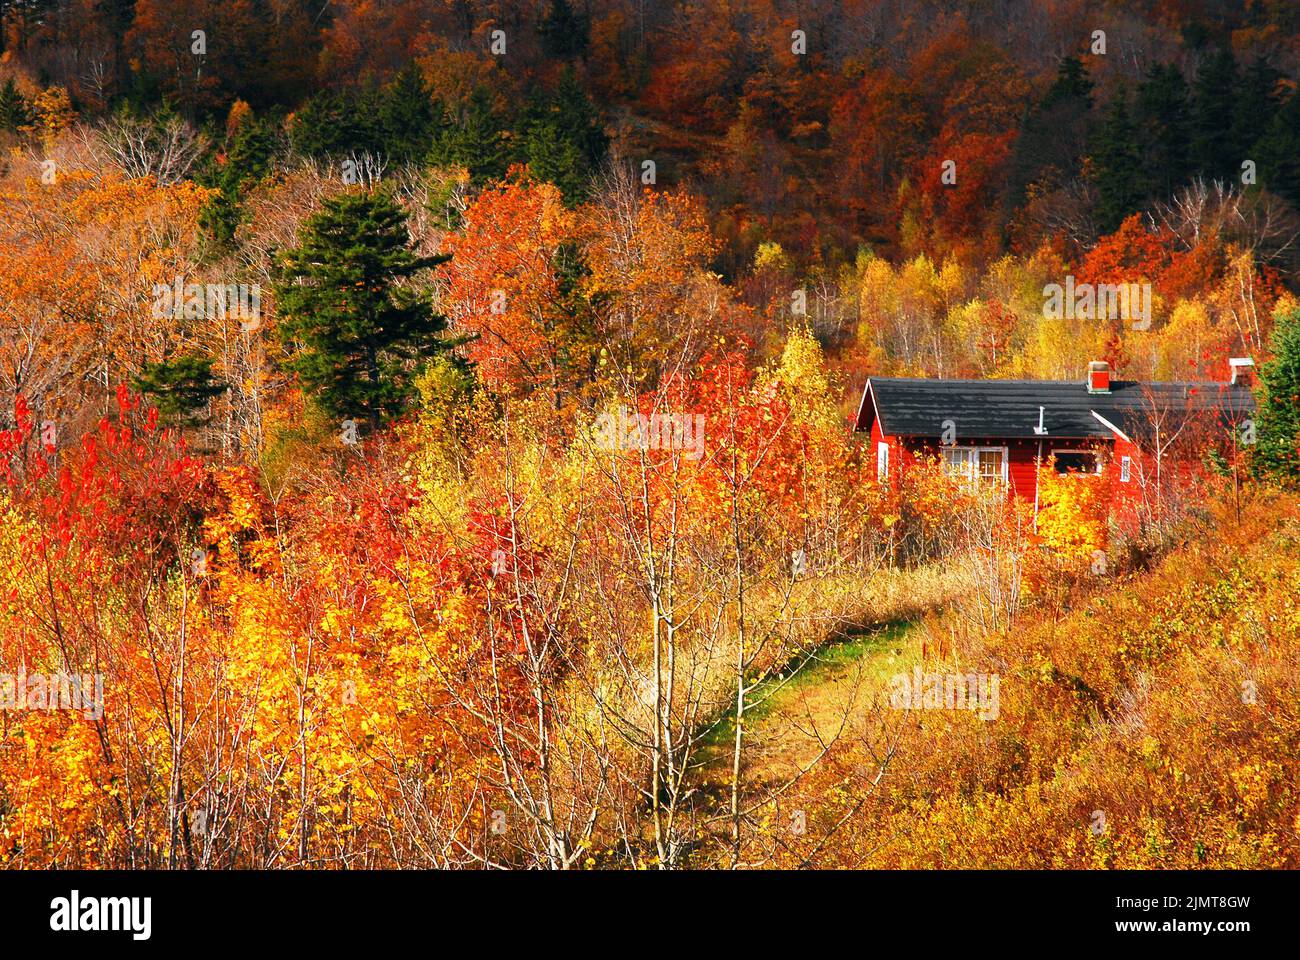 Une grange solitaire se dresse parmi les feuilles et les couleurs d'automne brillantes sur une colline en Nouvelle-Angleterre pendant la saison de feuillage d'automne Banque D'Images